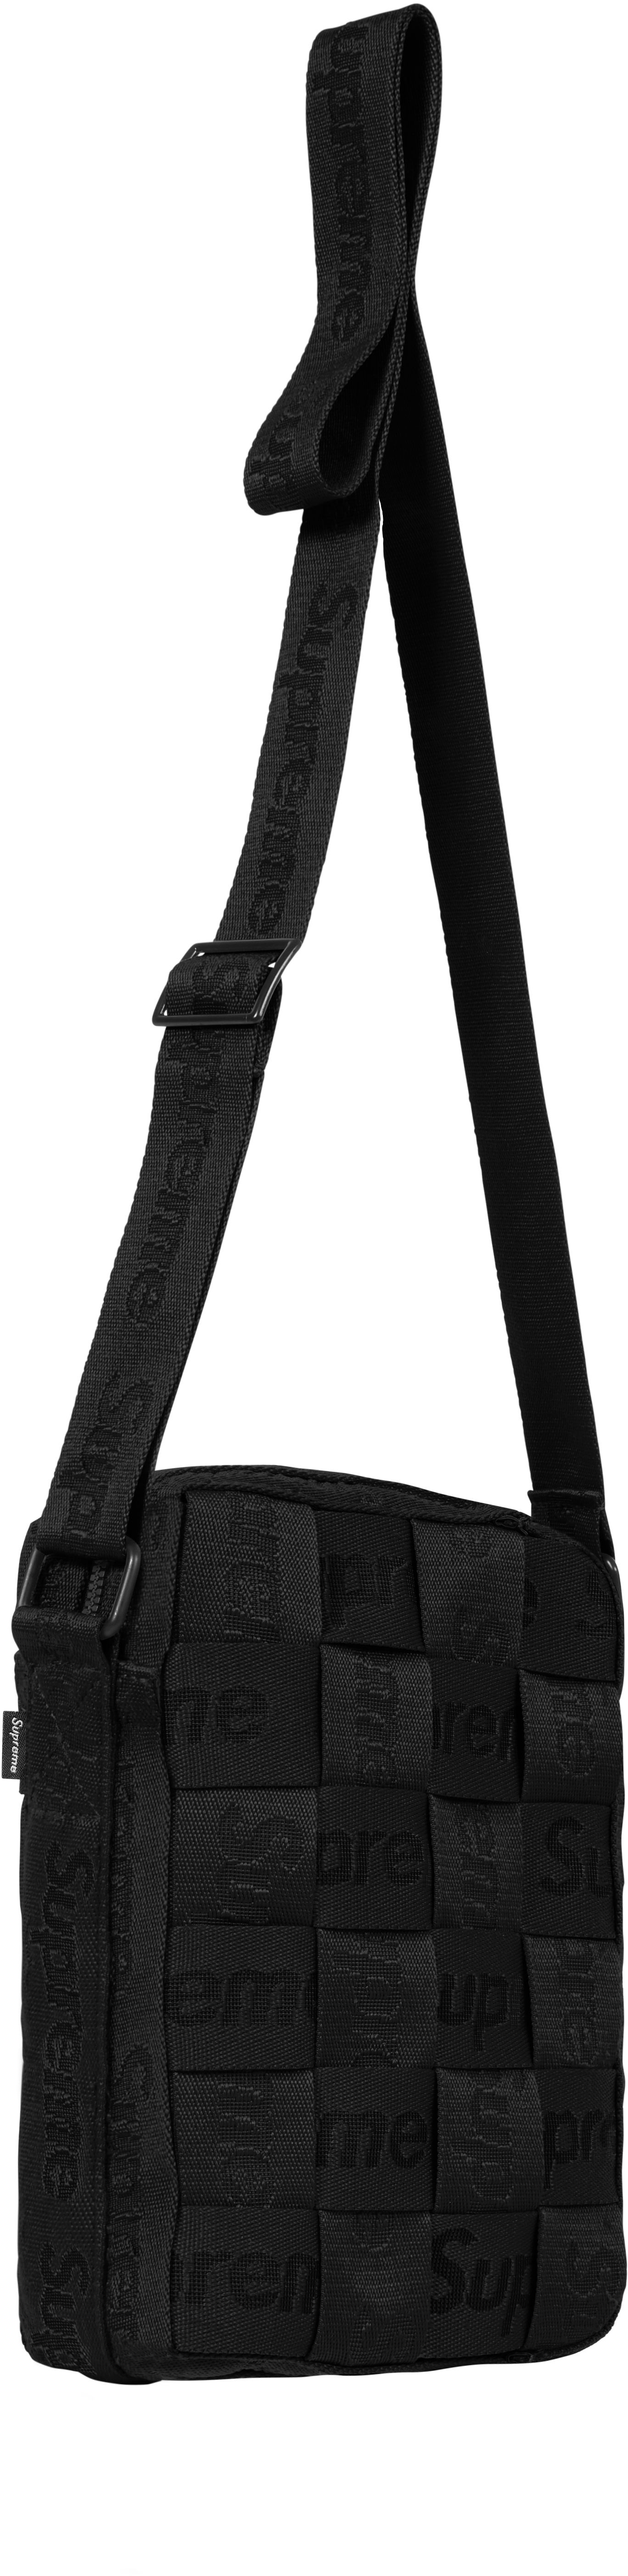 Supreme Woven Shoulder Bag Black-